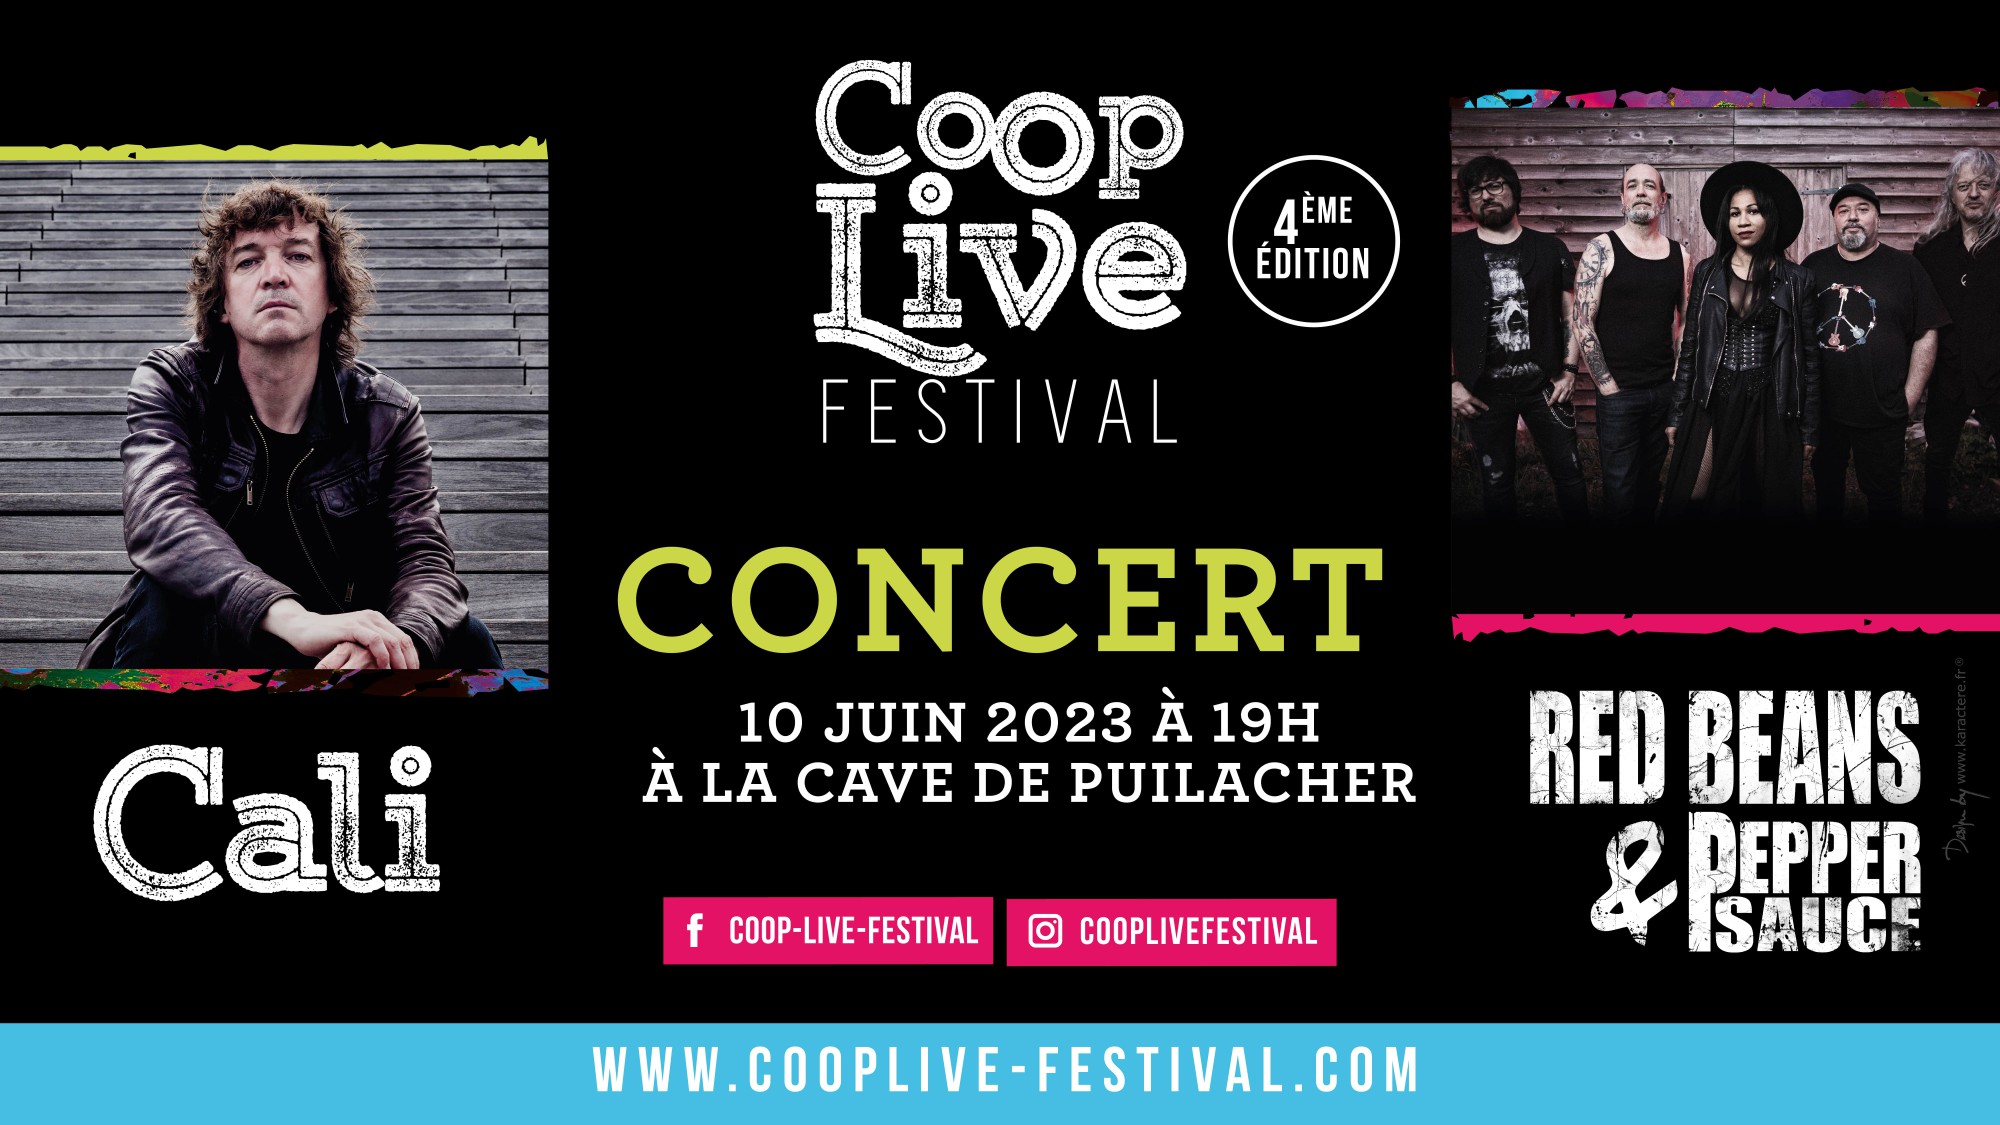 Hérault - 4ème édition du Coop Live Festival, du 9 au 11 juin, Cali et Red Beans & Pepper Sauce